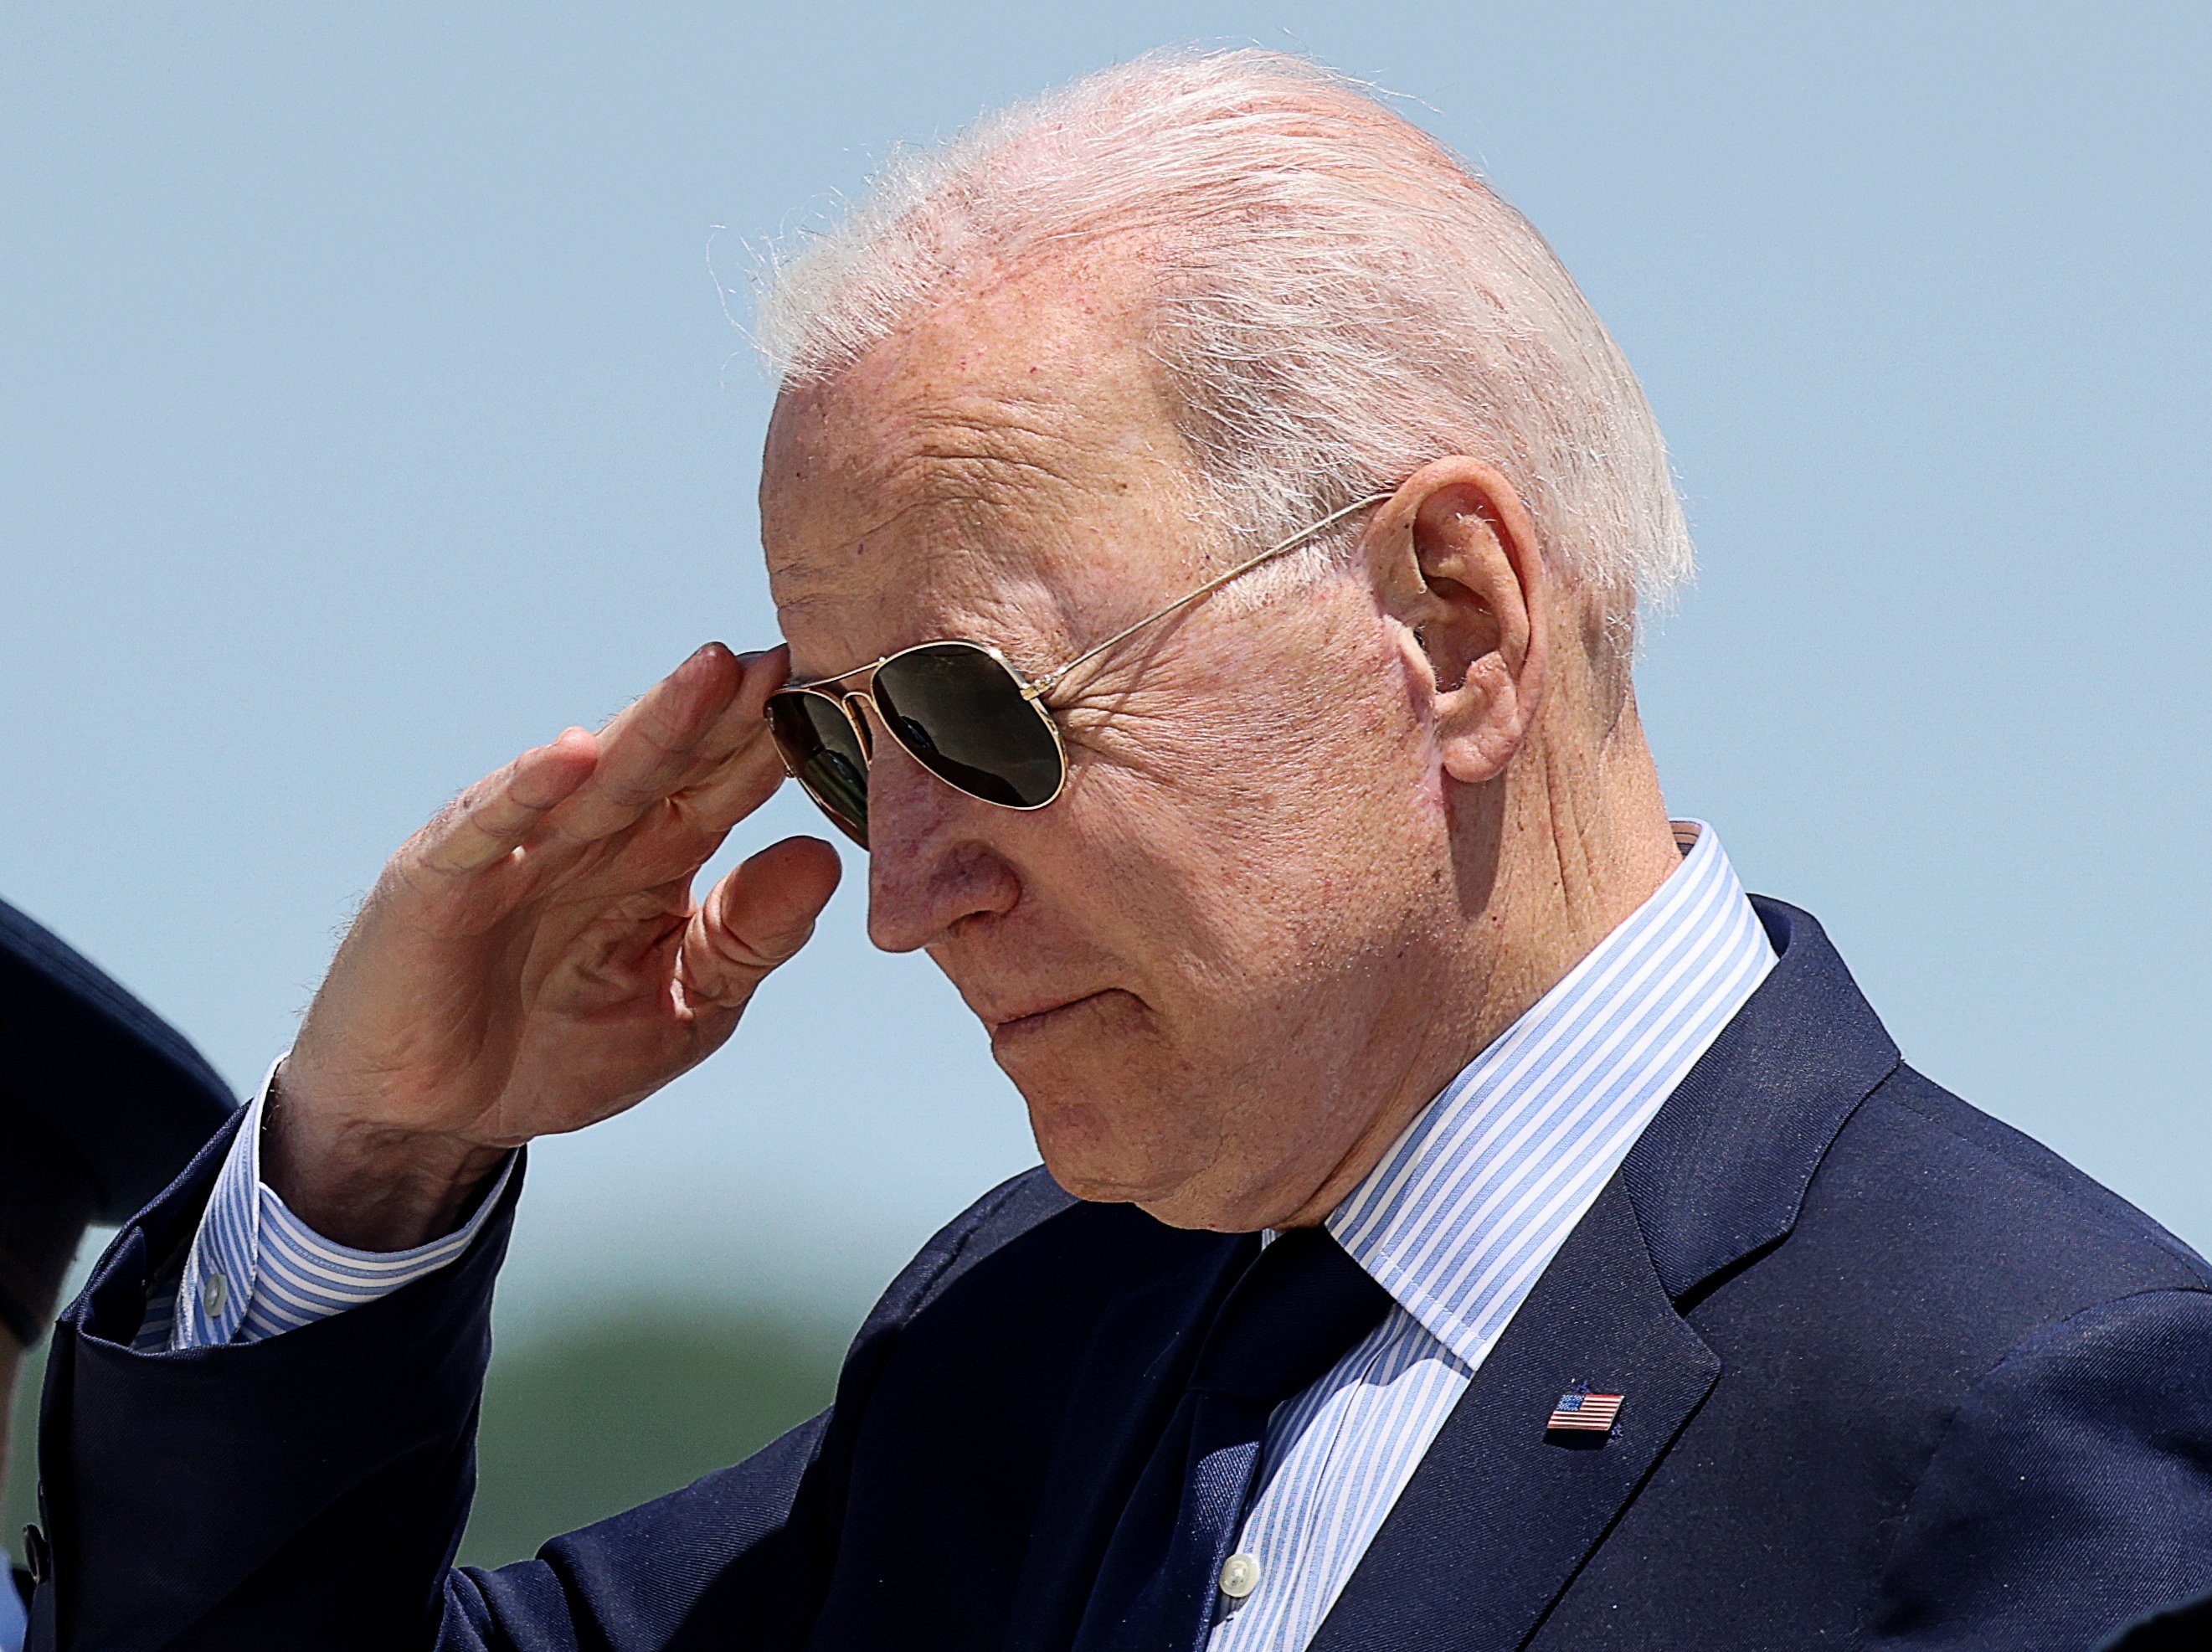 Joe Biden faz saudação com a mão e usa óculos escuros